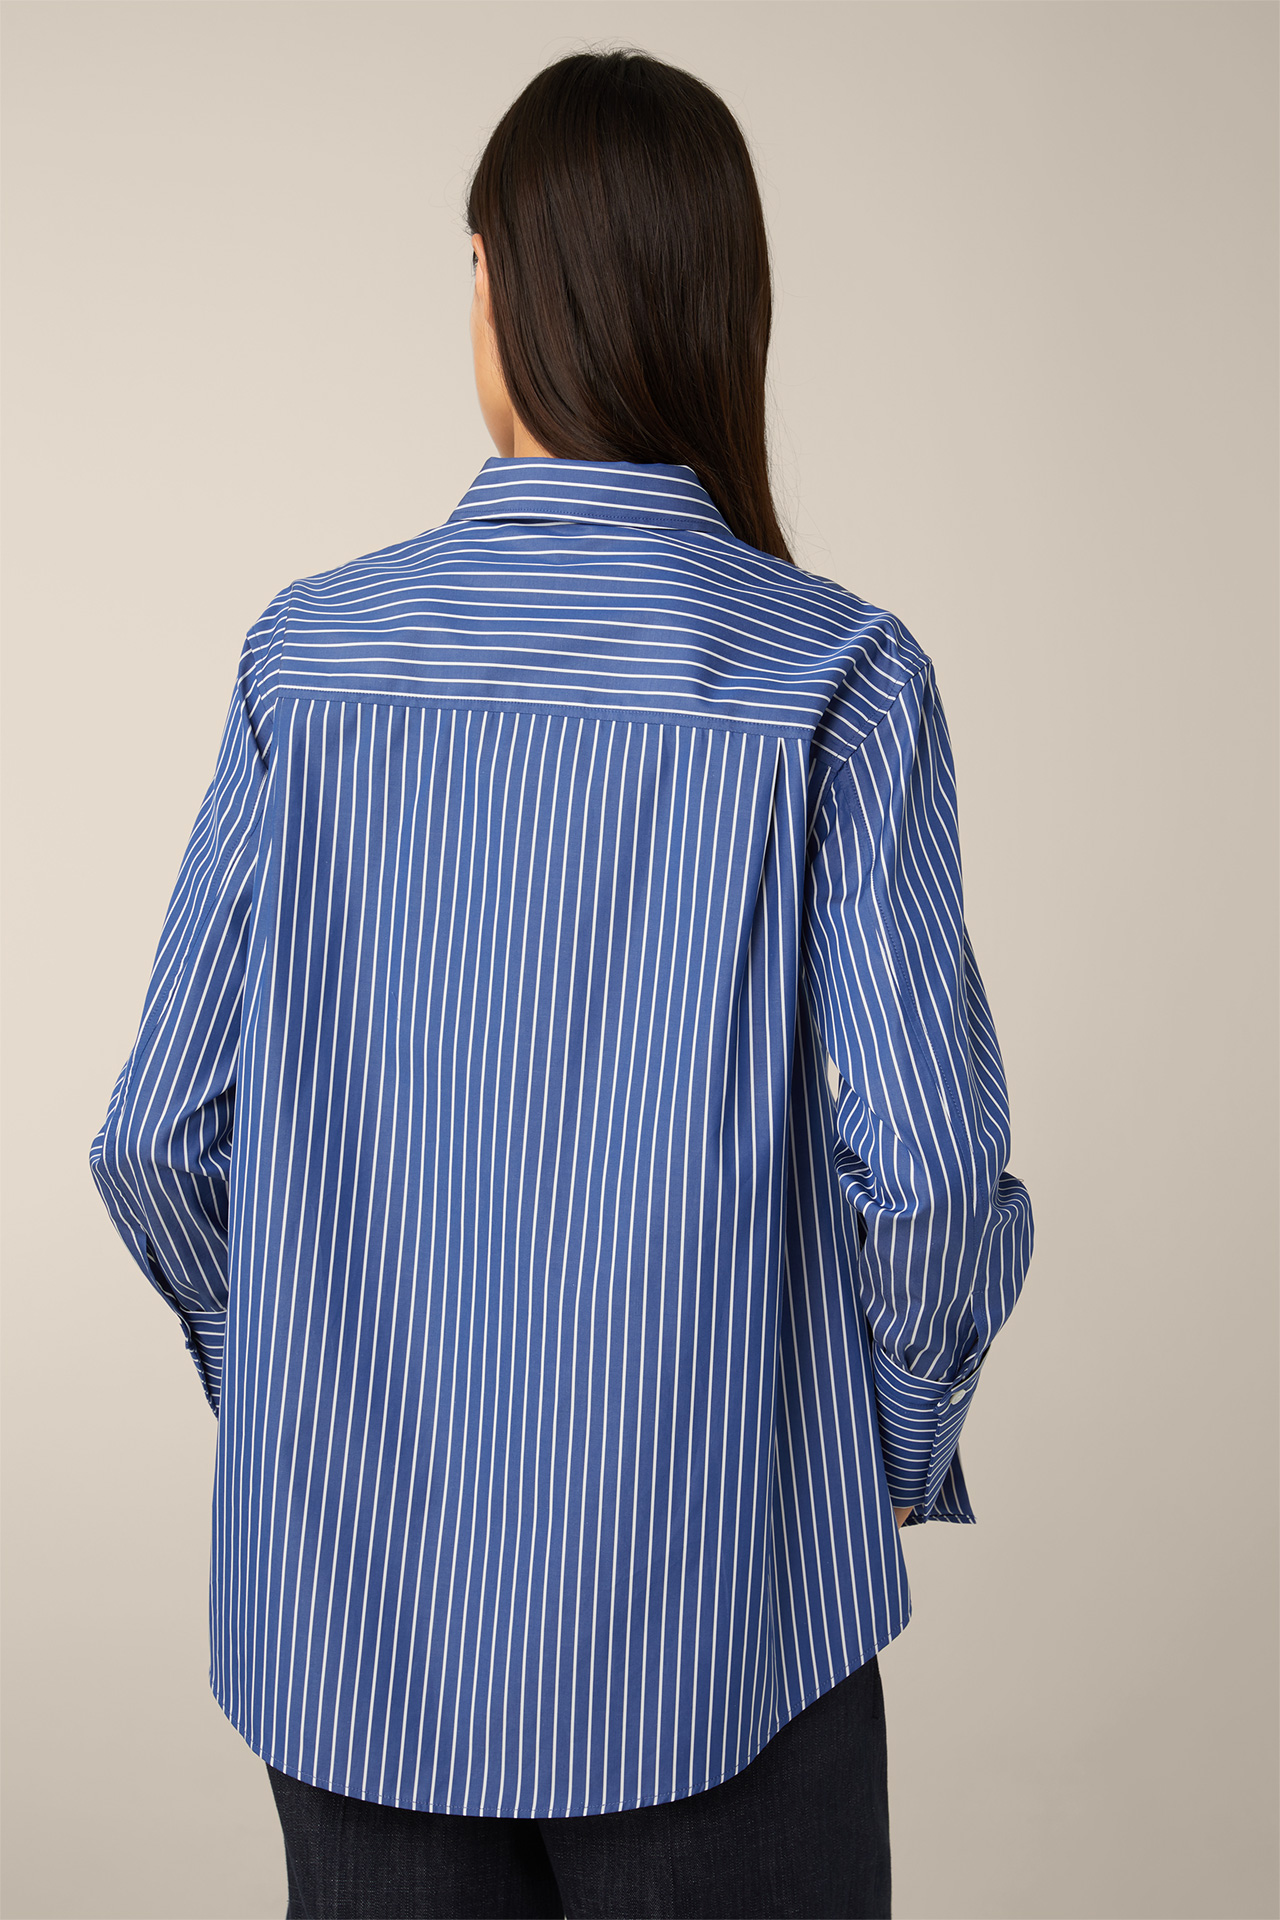 - im windsor. in Online-Shop gestreift Popeline-Baumwoll-Streifen-Hemd-Bluse Blau-Weiß